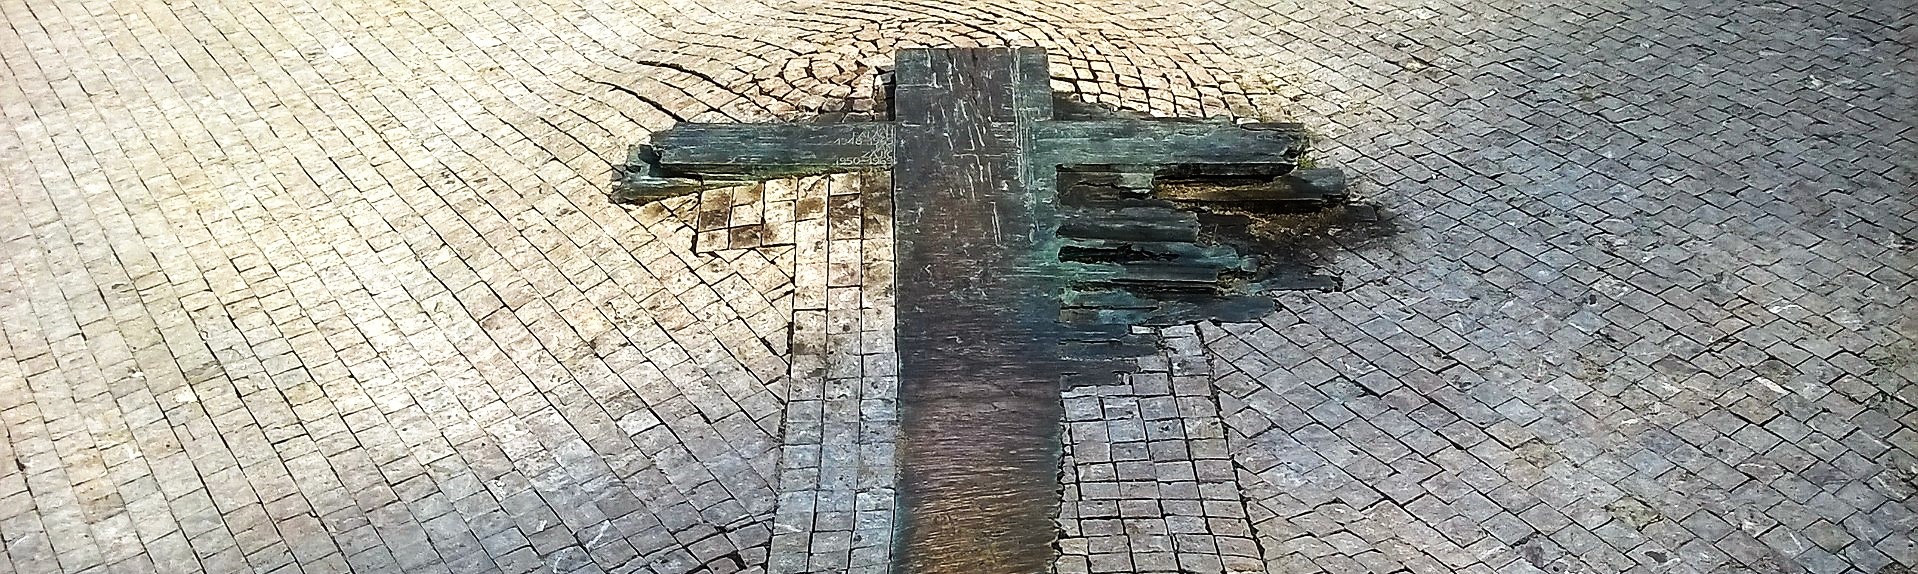 Herinneringsmonument in Praag. Mark Van de Voorde: 'In de uitwaaierende arm van het kruis zie ik een teken van hoop.'